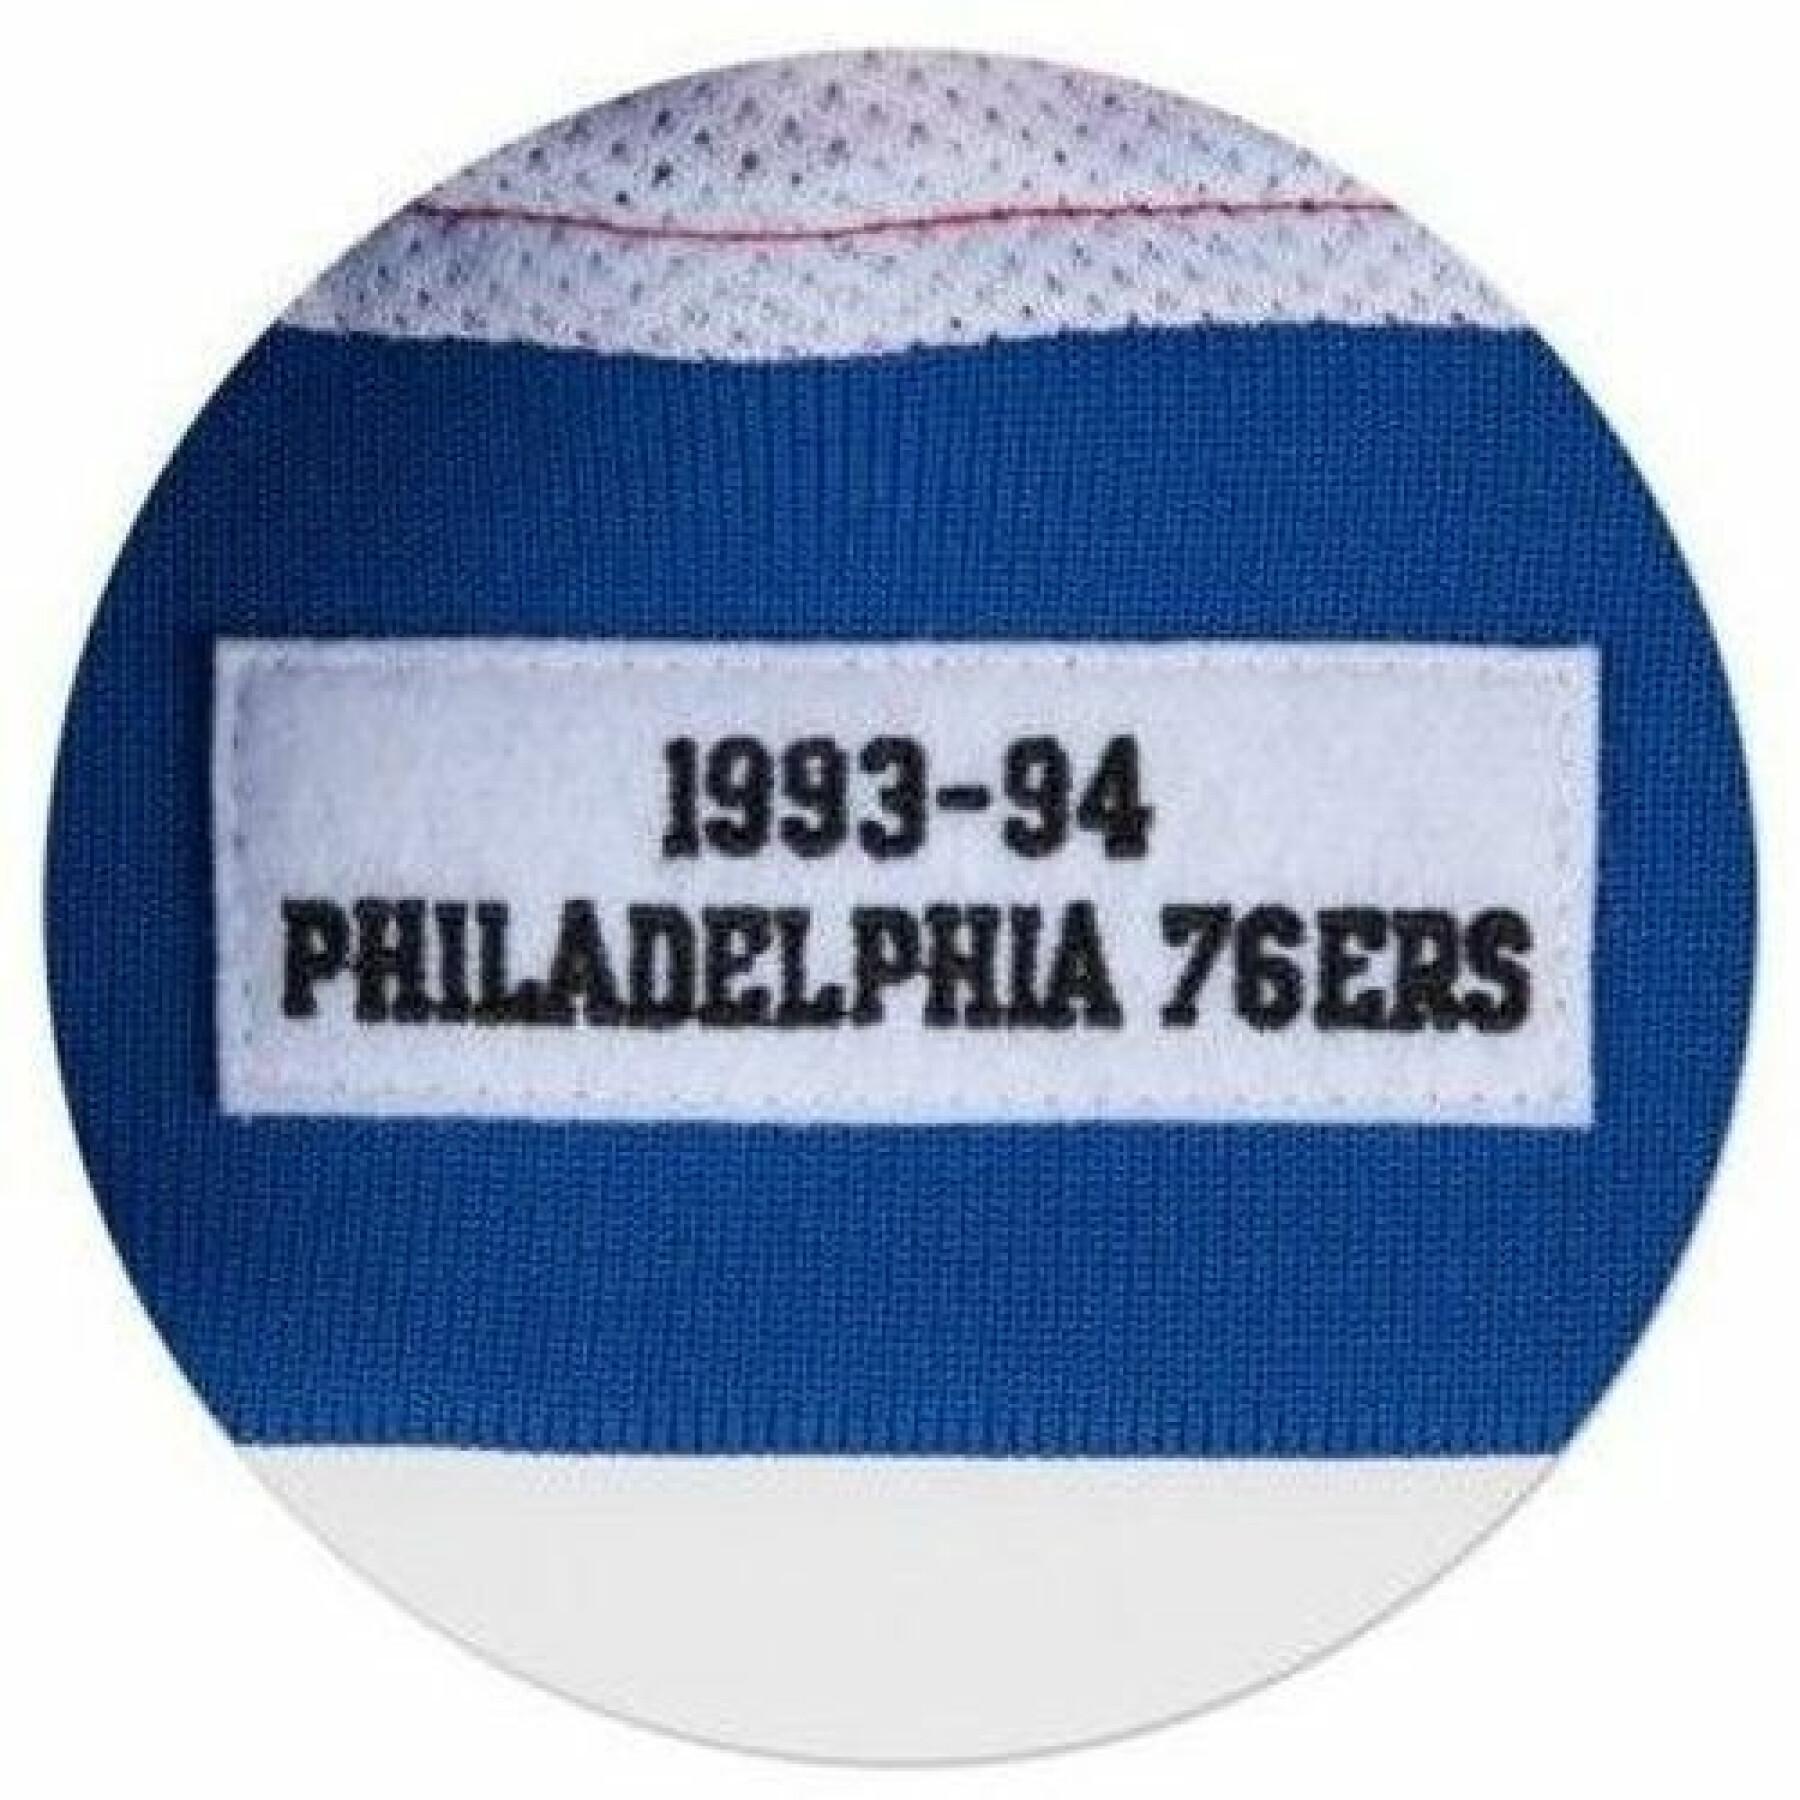 Jas Philadelphia 76ers authentic